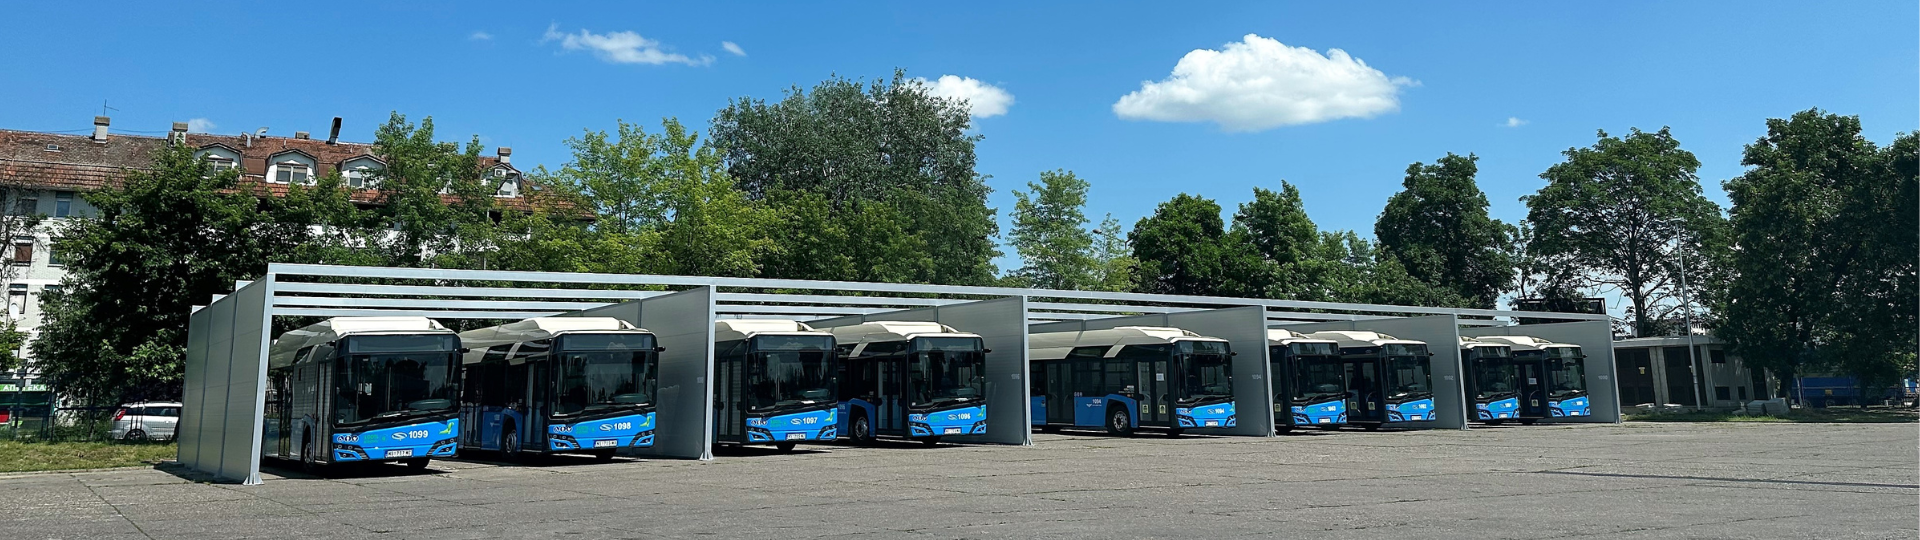 Solaris electrifies the bus fleet in Novi Sad